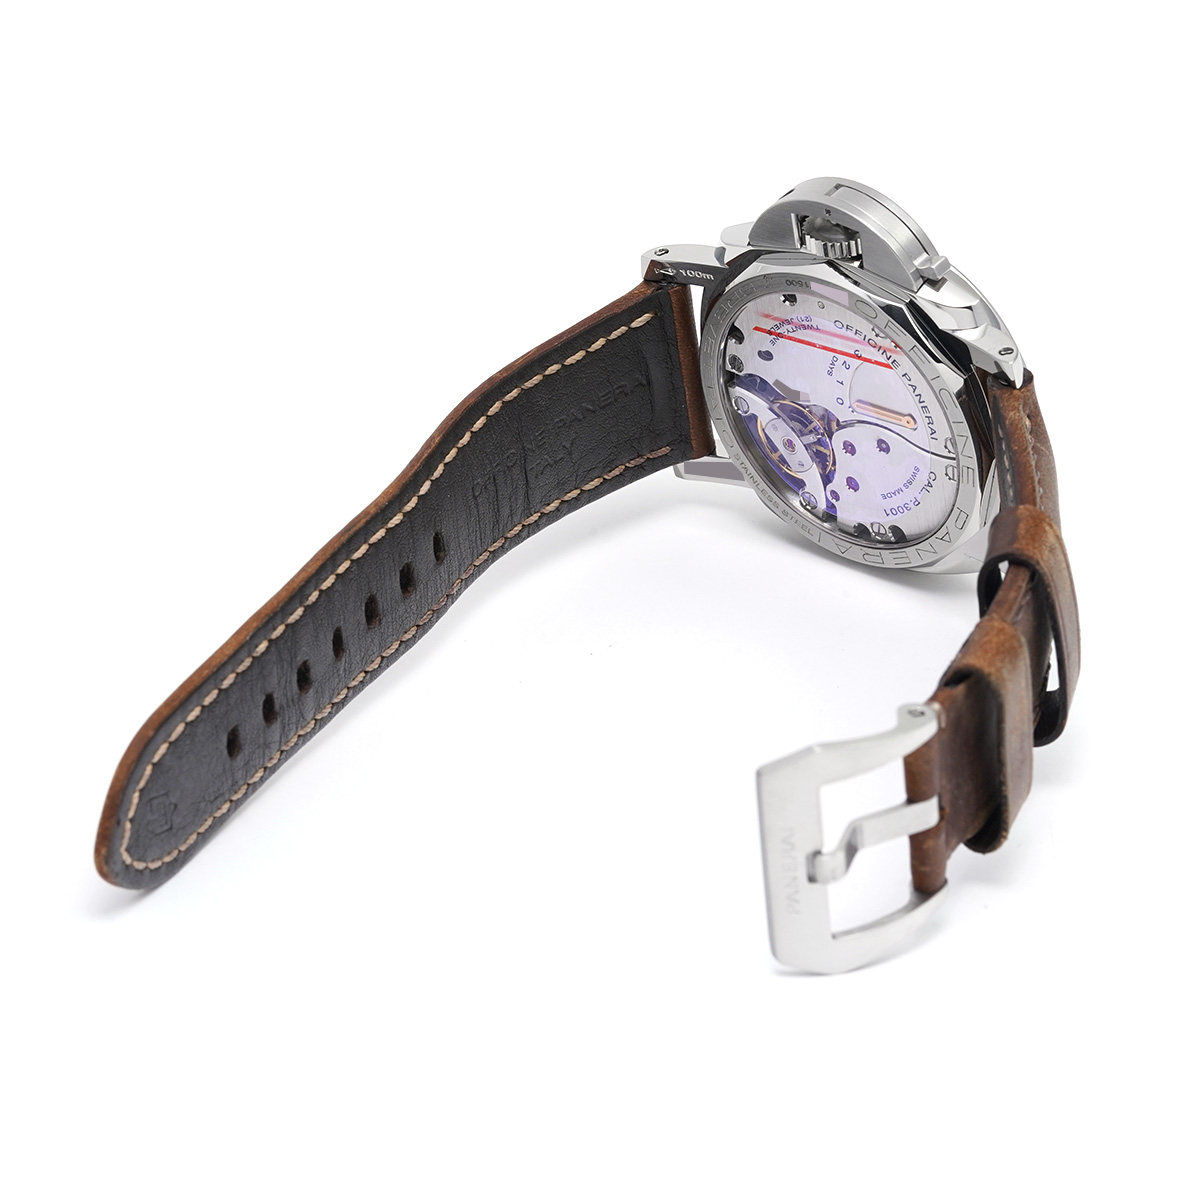 PANERAI ルミノールマリーナ 1950 3デイズ アッチャイオ PAM00422 メンズ腕時計